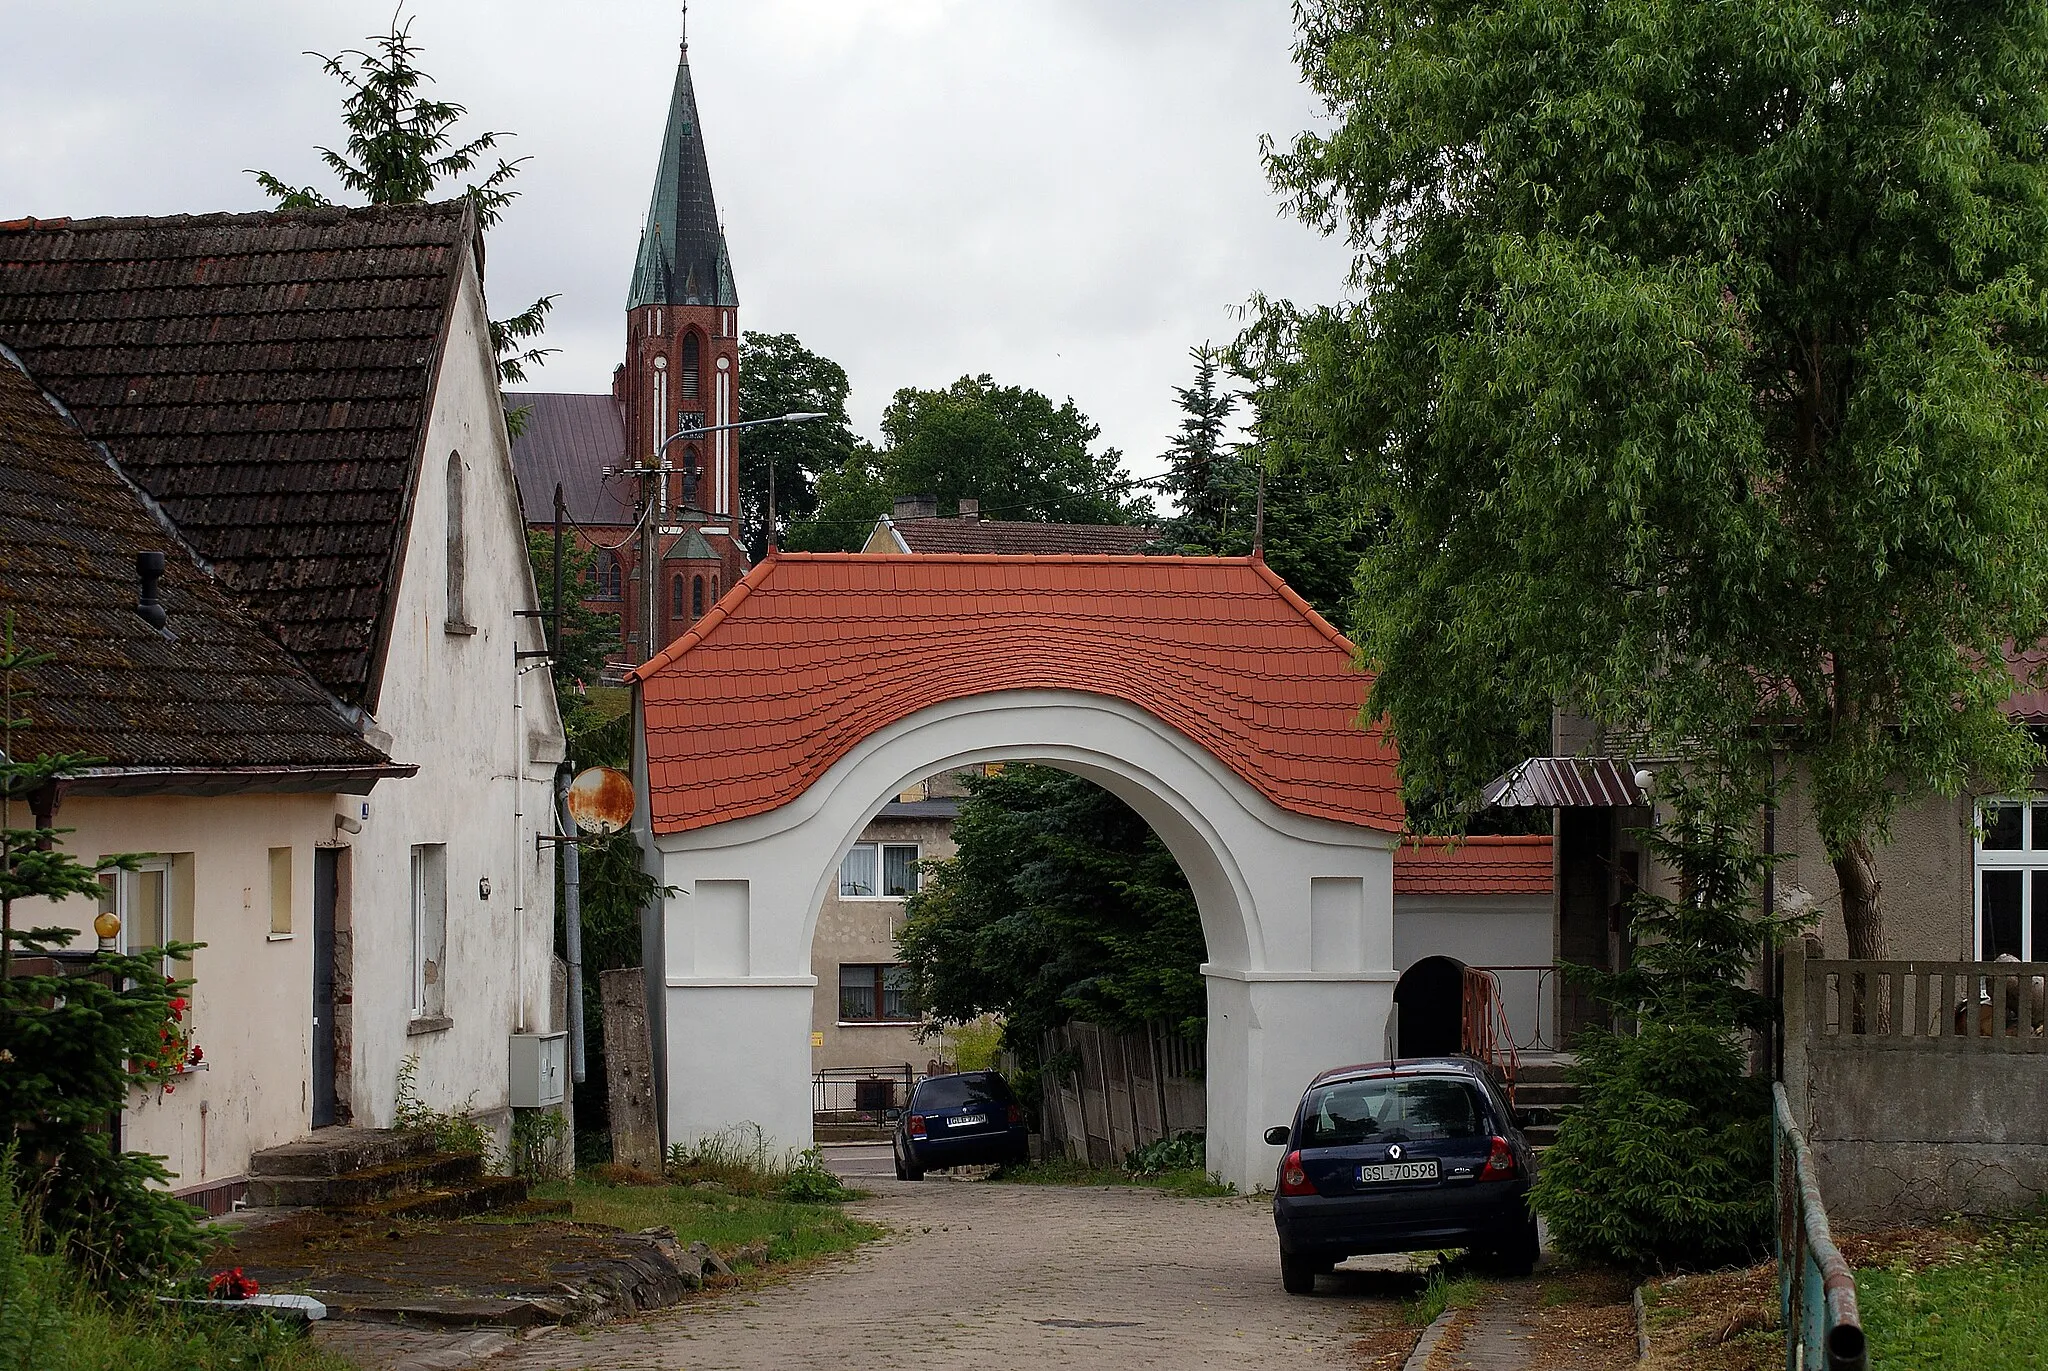 Photo showing: Brama pałacowa w Główczycach (wykorzystanie pliku możliwe tylko przy podaniu imienia i nazwiska autora według wzoru: fot. Karol Szejner/Wikipedia)